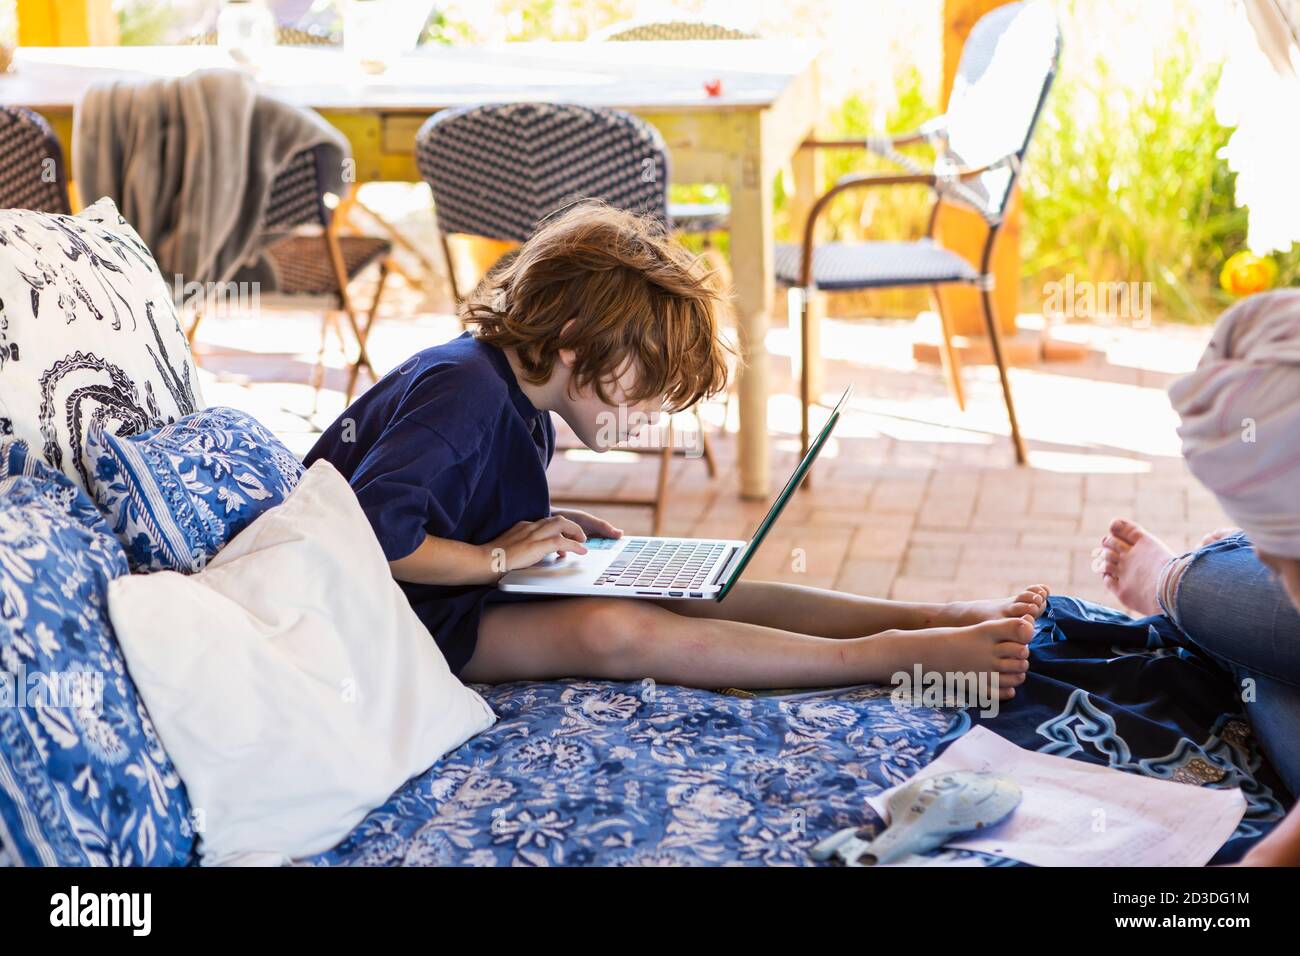 Ragazzo con i capelli marroni seduti sul letto esterno, facendo i compiti sul computer portatile. Foto Stock